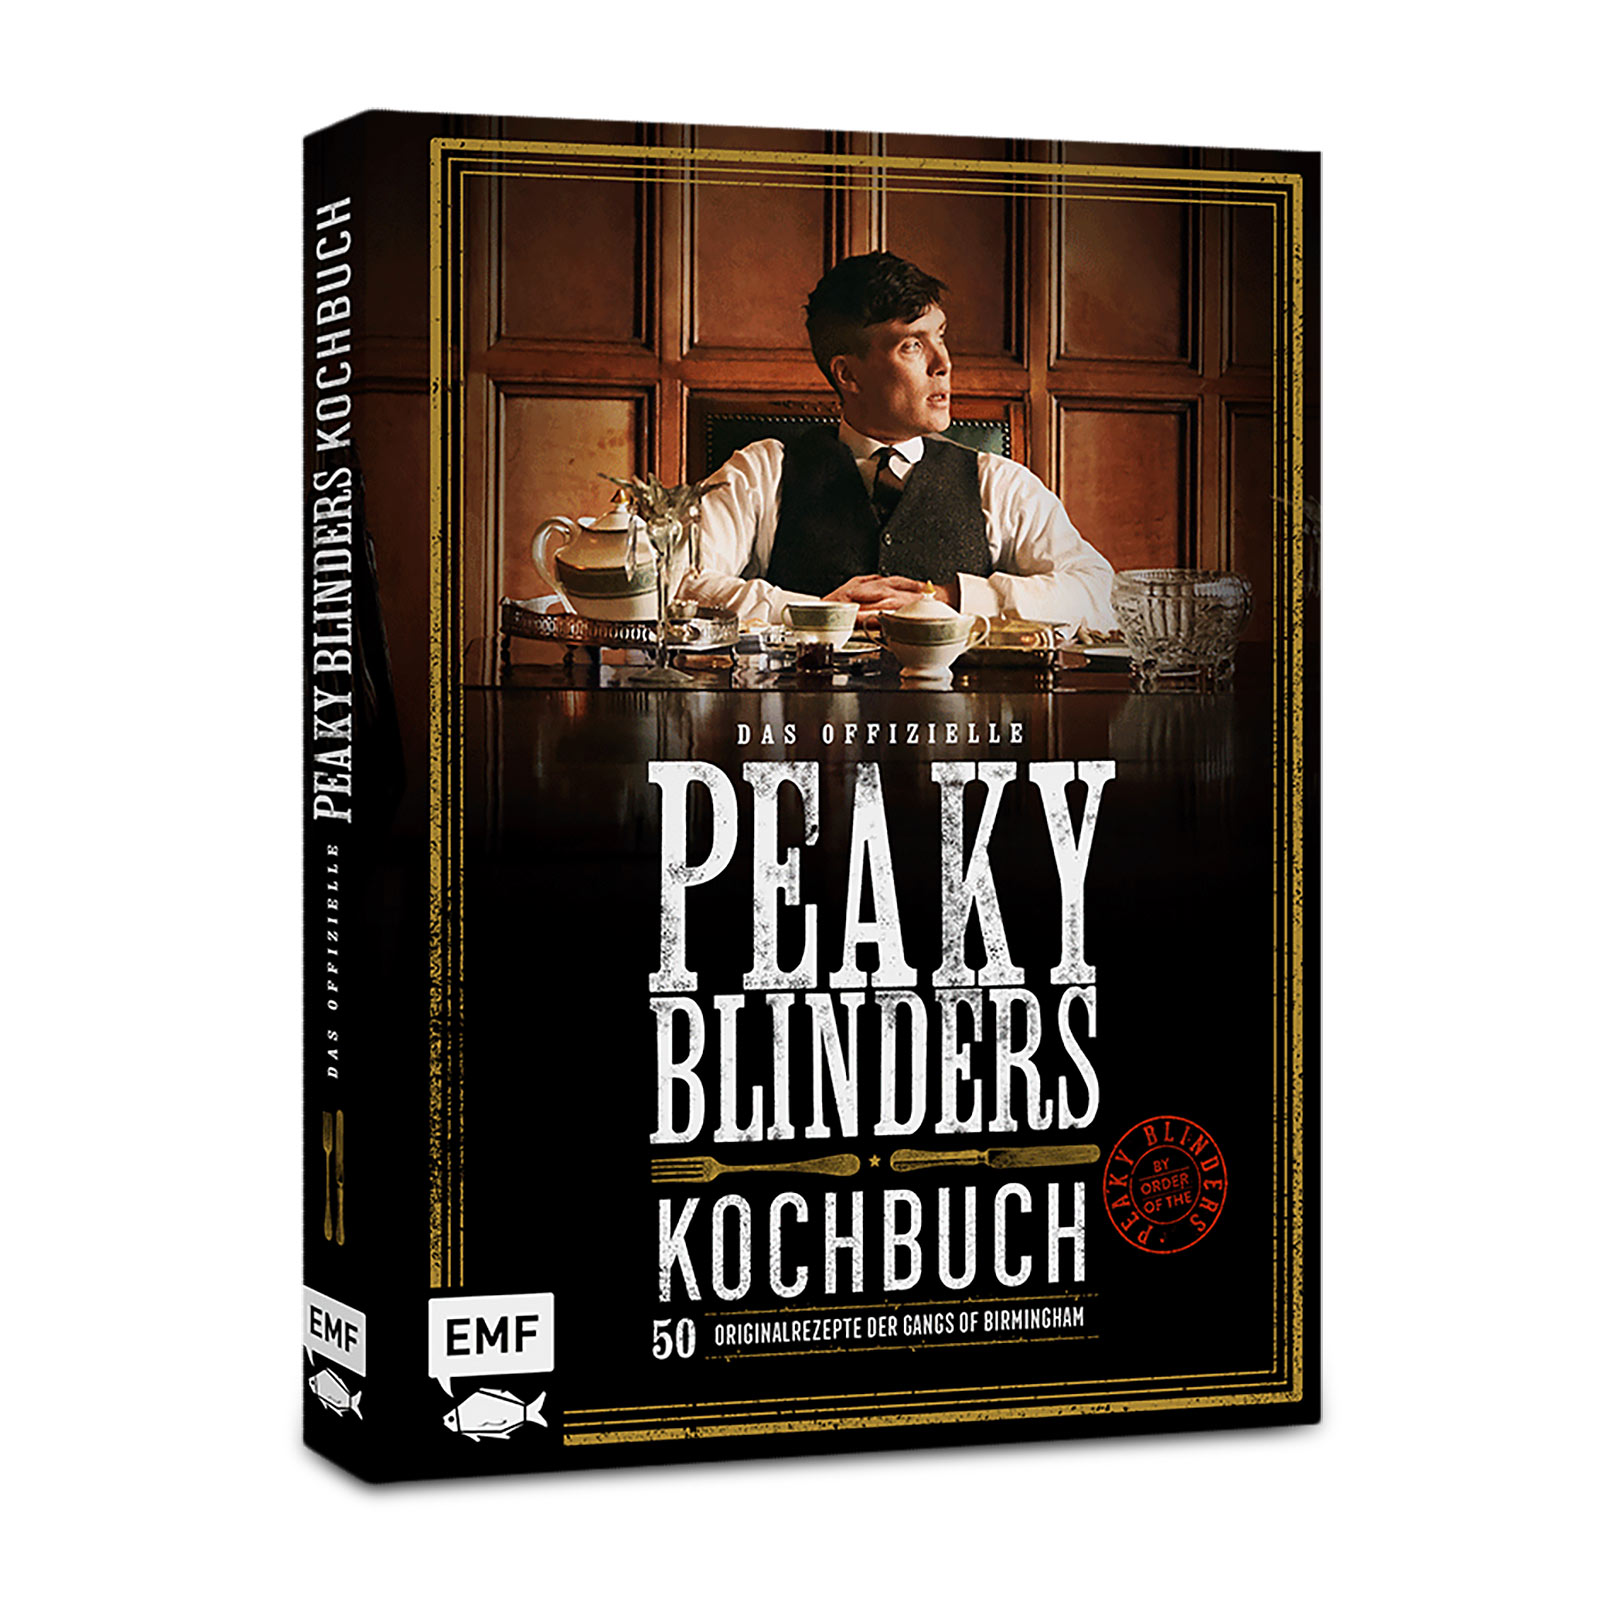 Het officiële Peaky Blinders kookboek